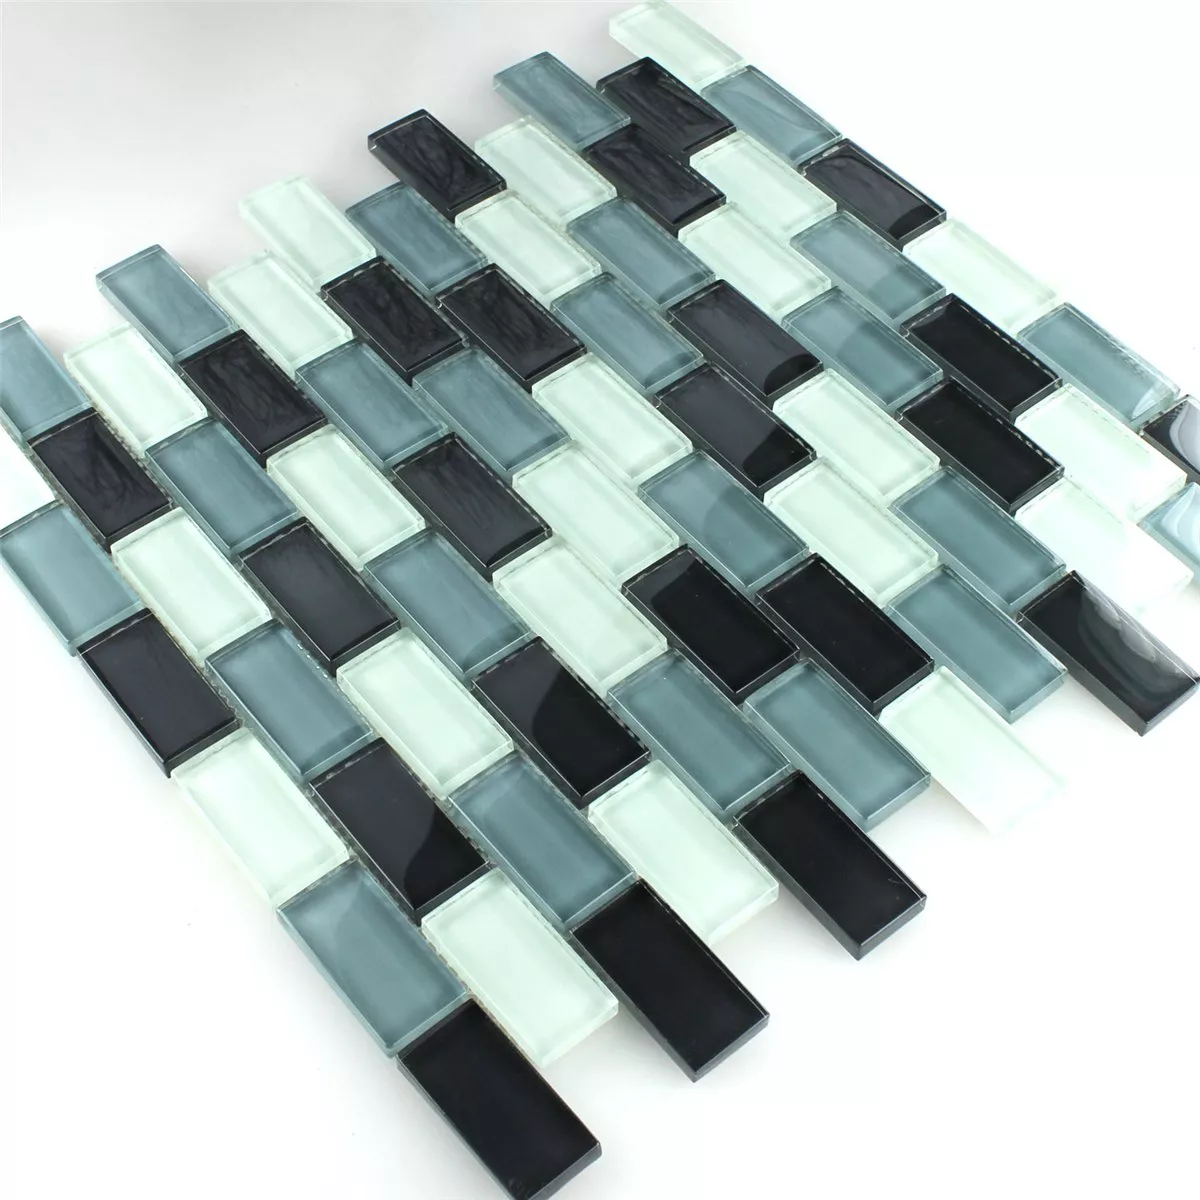 Muster von Mosaikfliesen Glas Crystal Brick Grau Mix